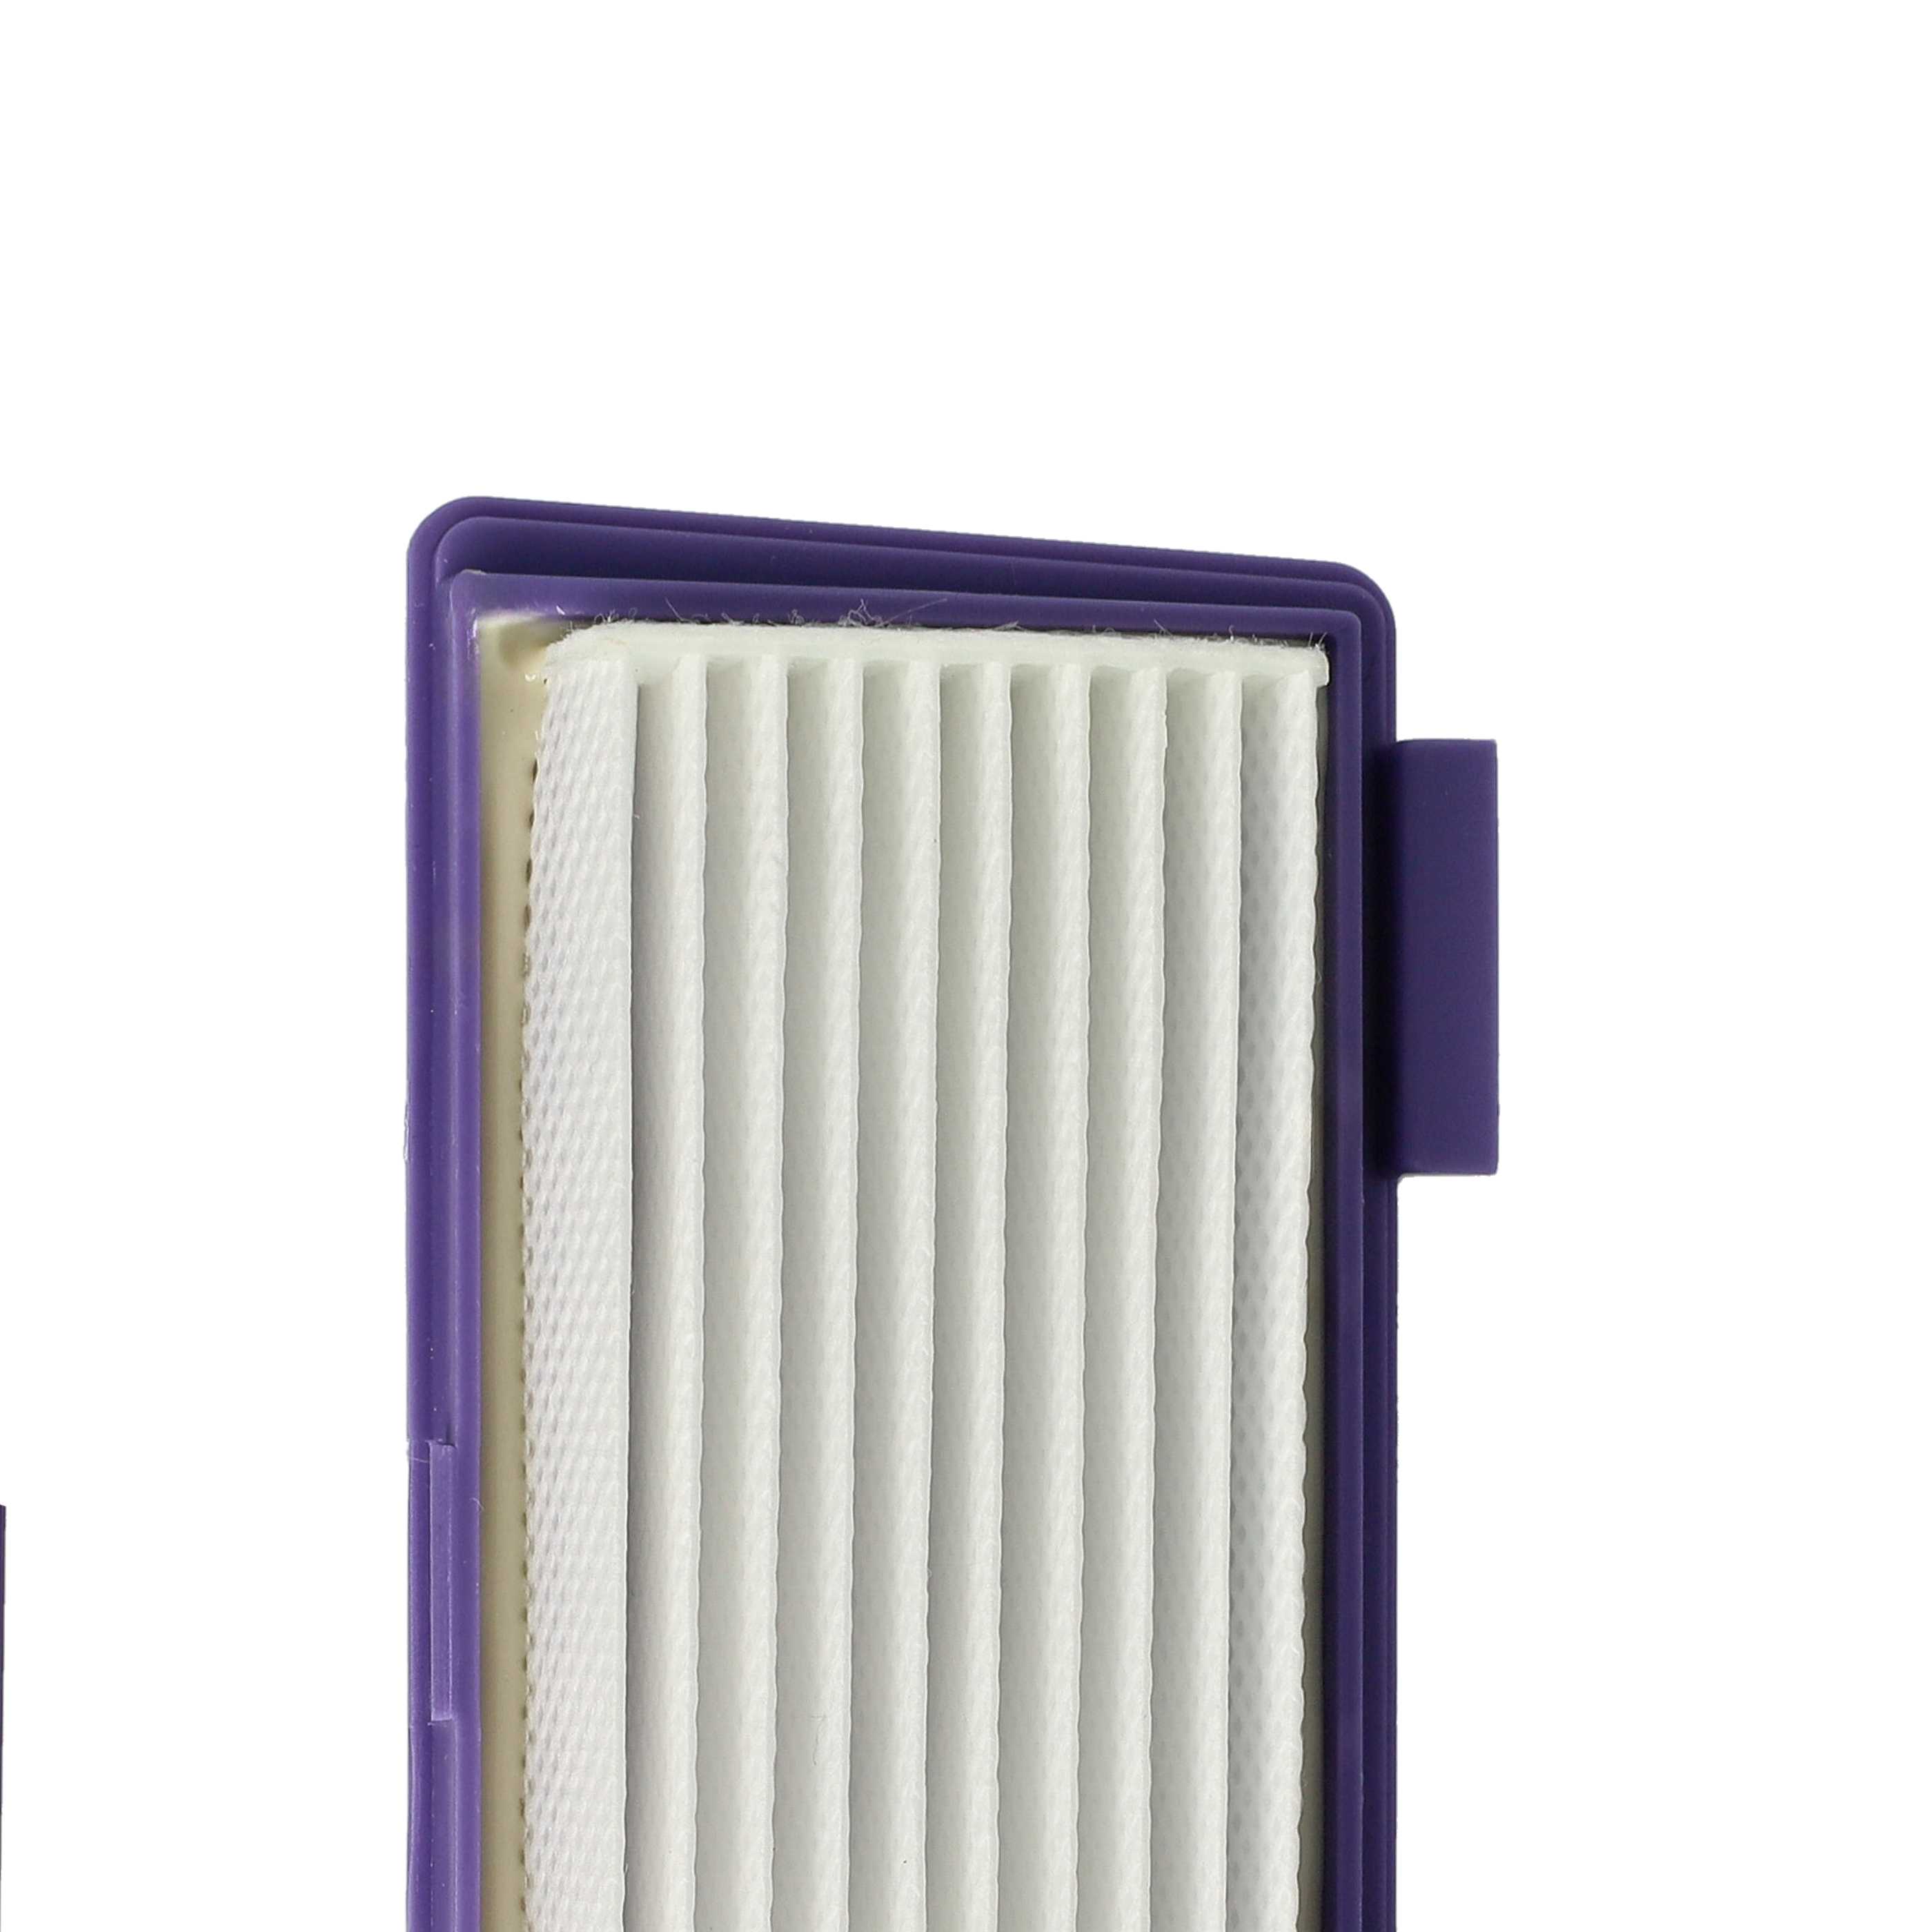 3x HEPA filter suitable for XV Essential Neato, Vorwerk XV Essential Vacuum Cleaner